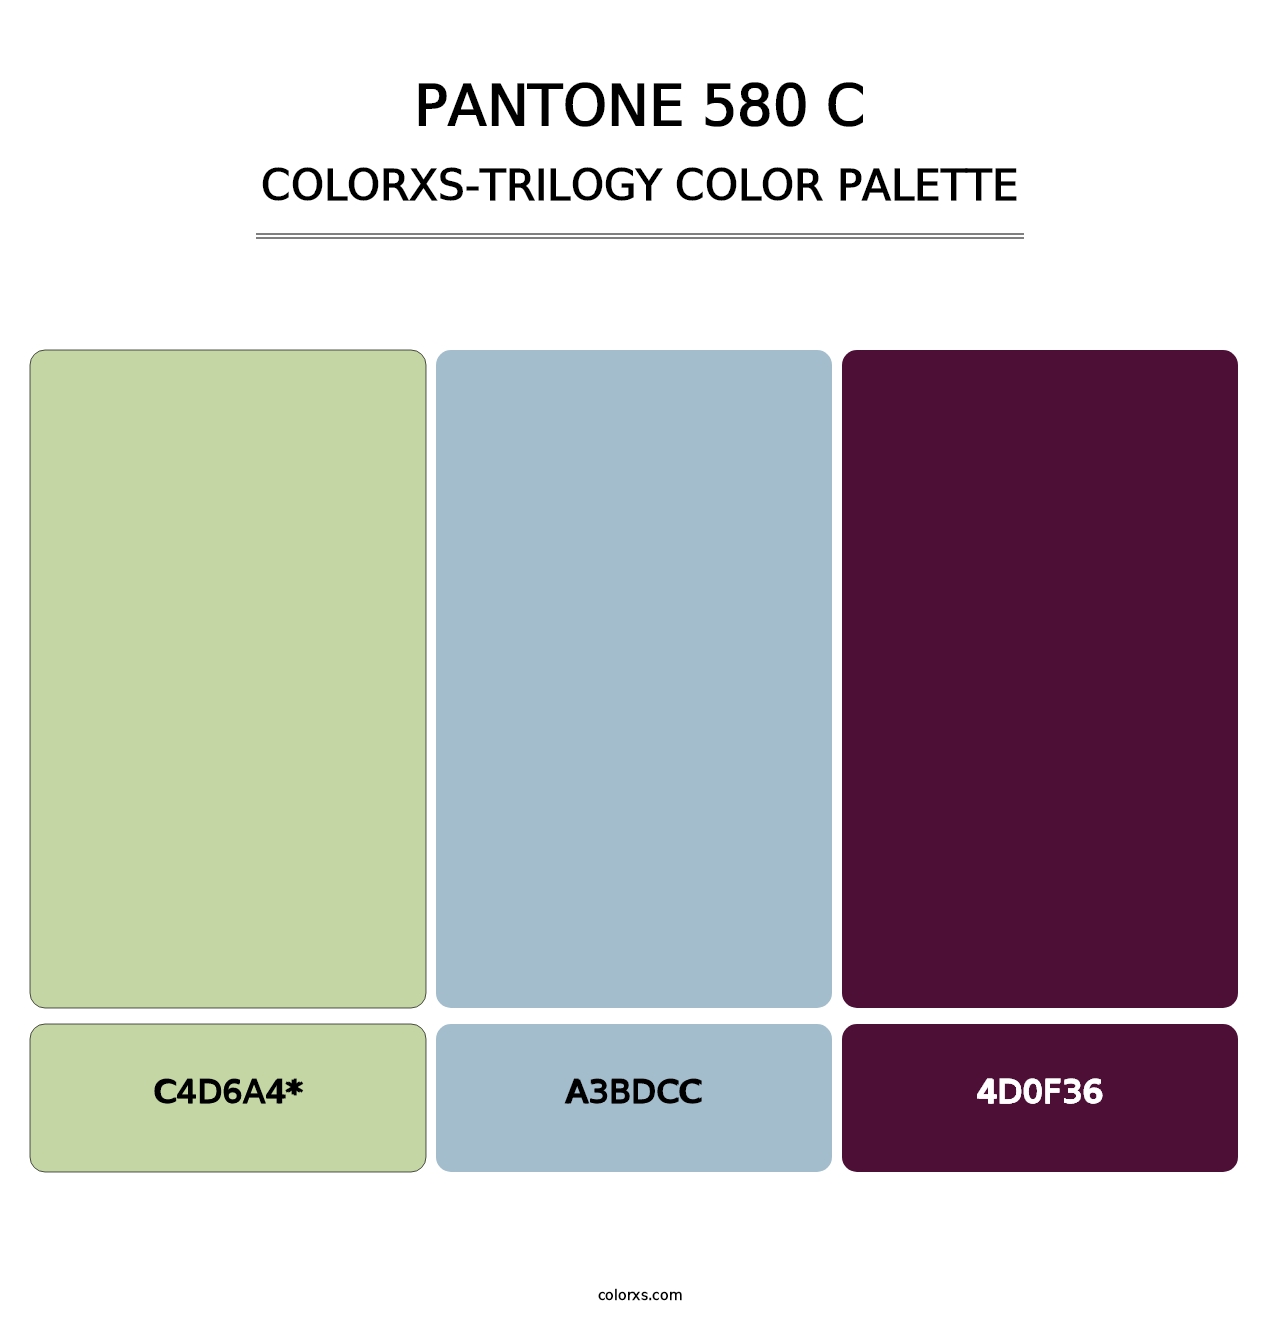 PANTONE 580 C - Colorxs Trilogy Palette